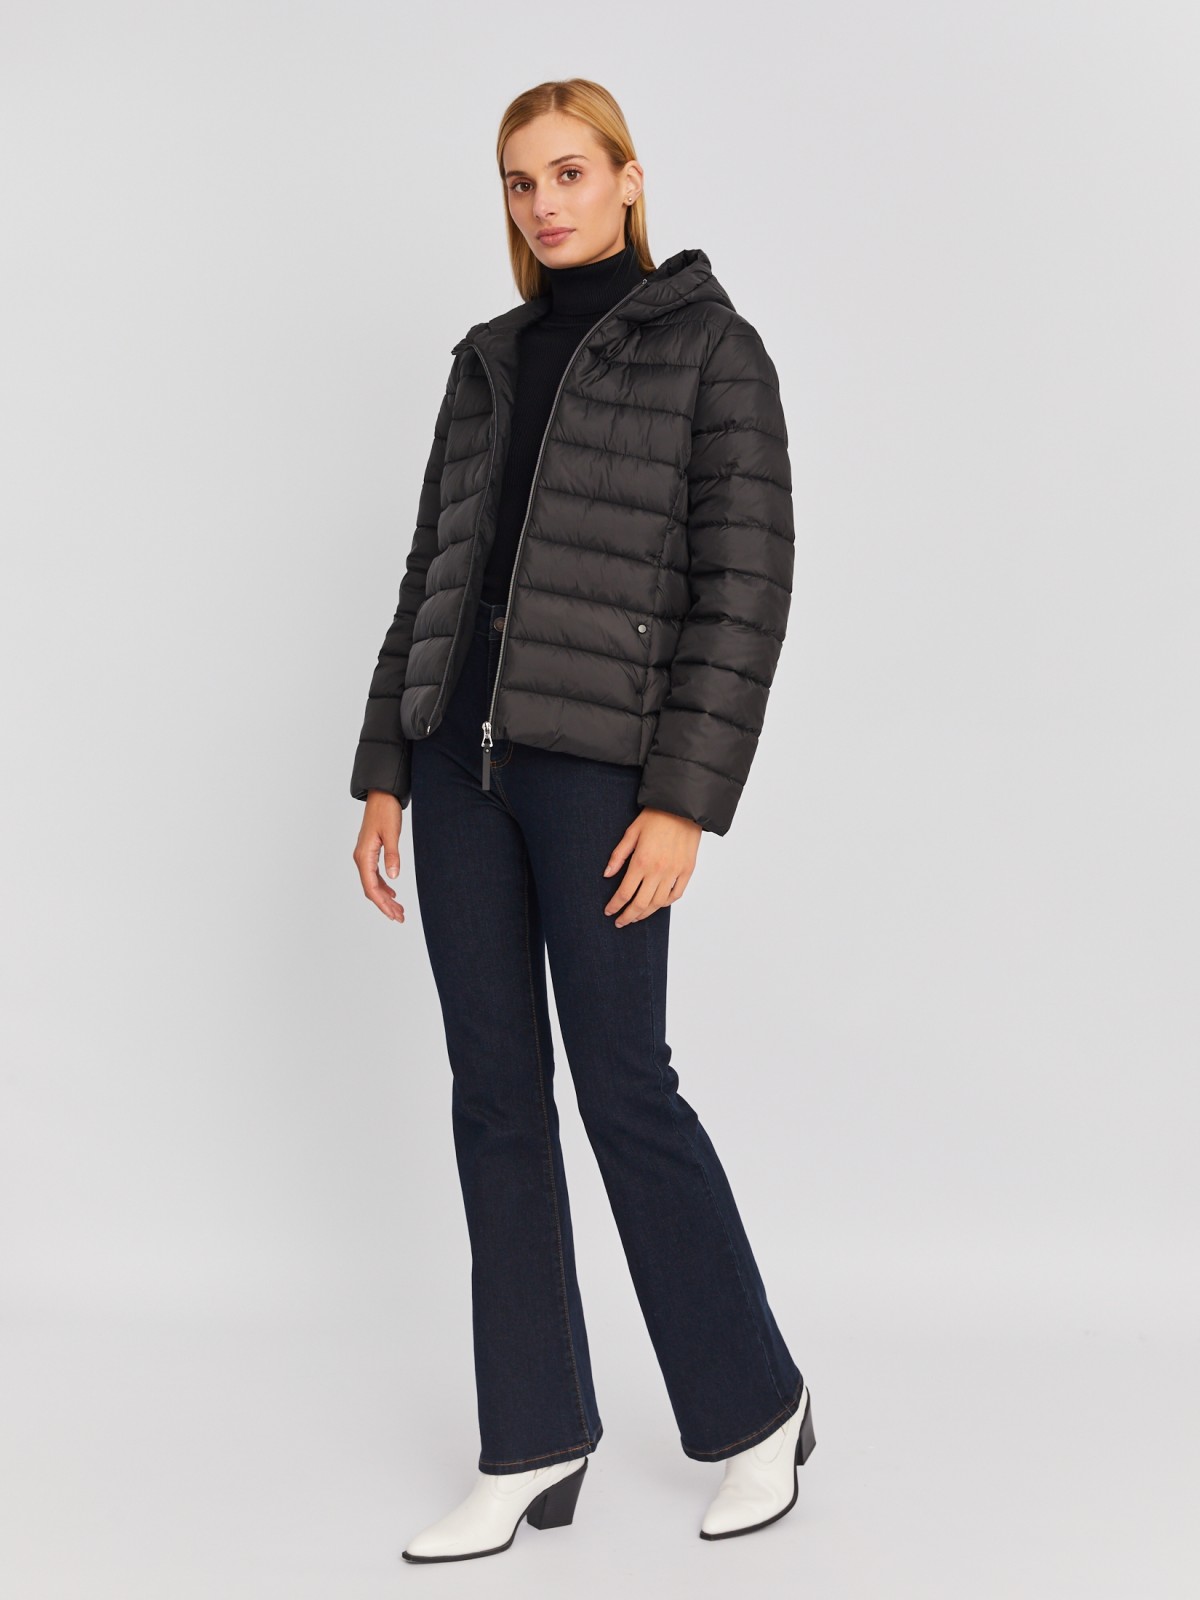 Утеплённая стёганая куртка укороченного фасона с капюшоном zolla 023335112224, цвет черный, размер S - фото 2